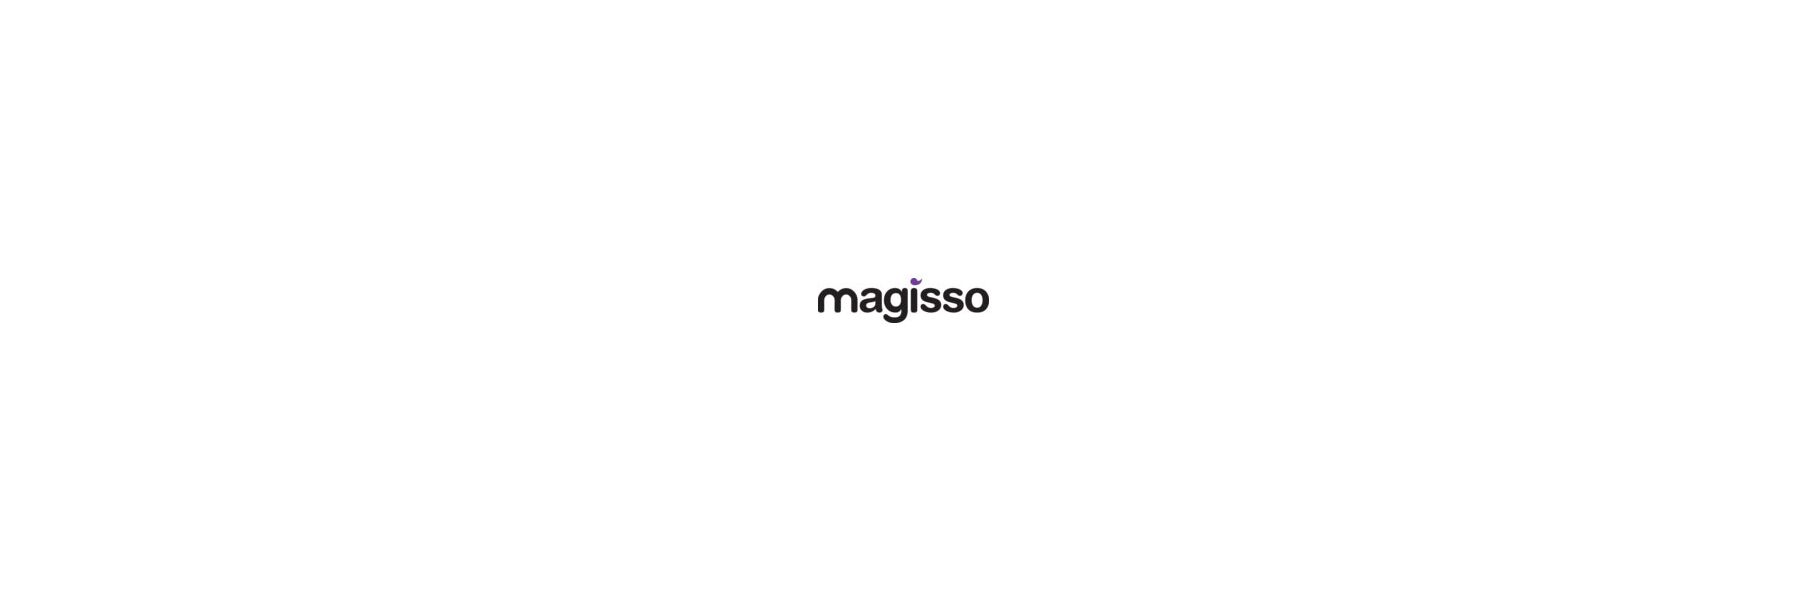 magisso ist eine finnische Designmarke für...